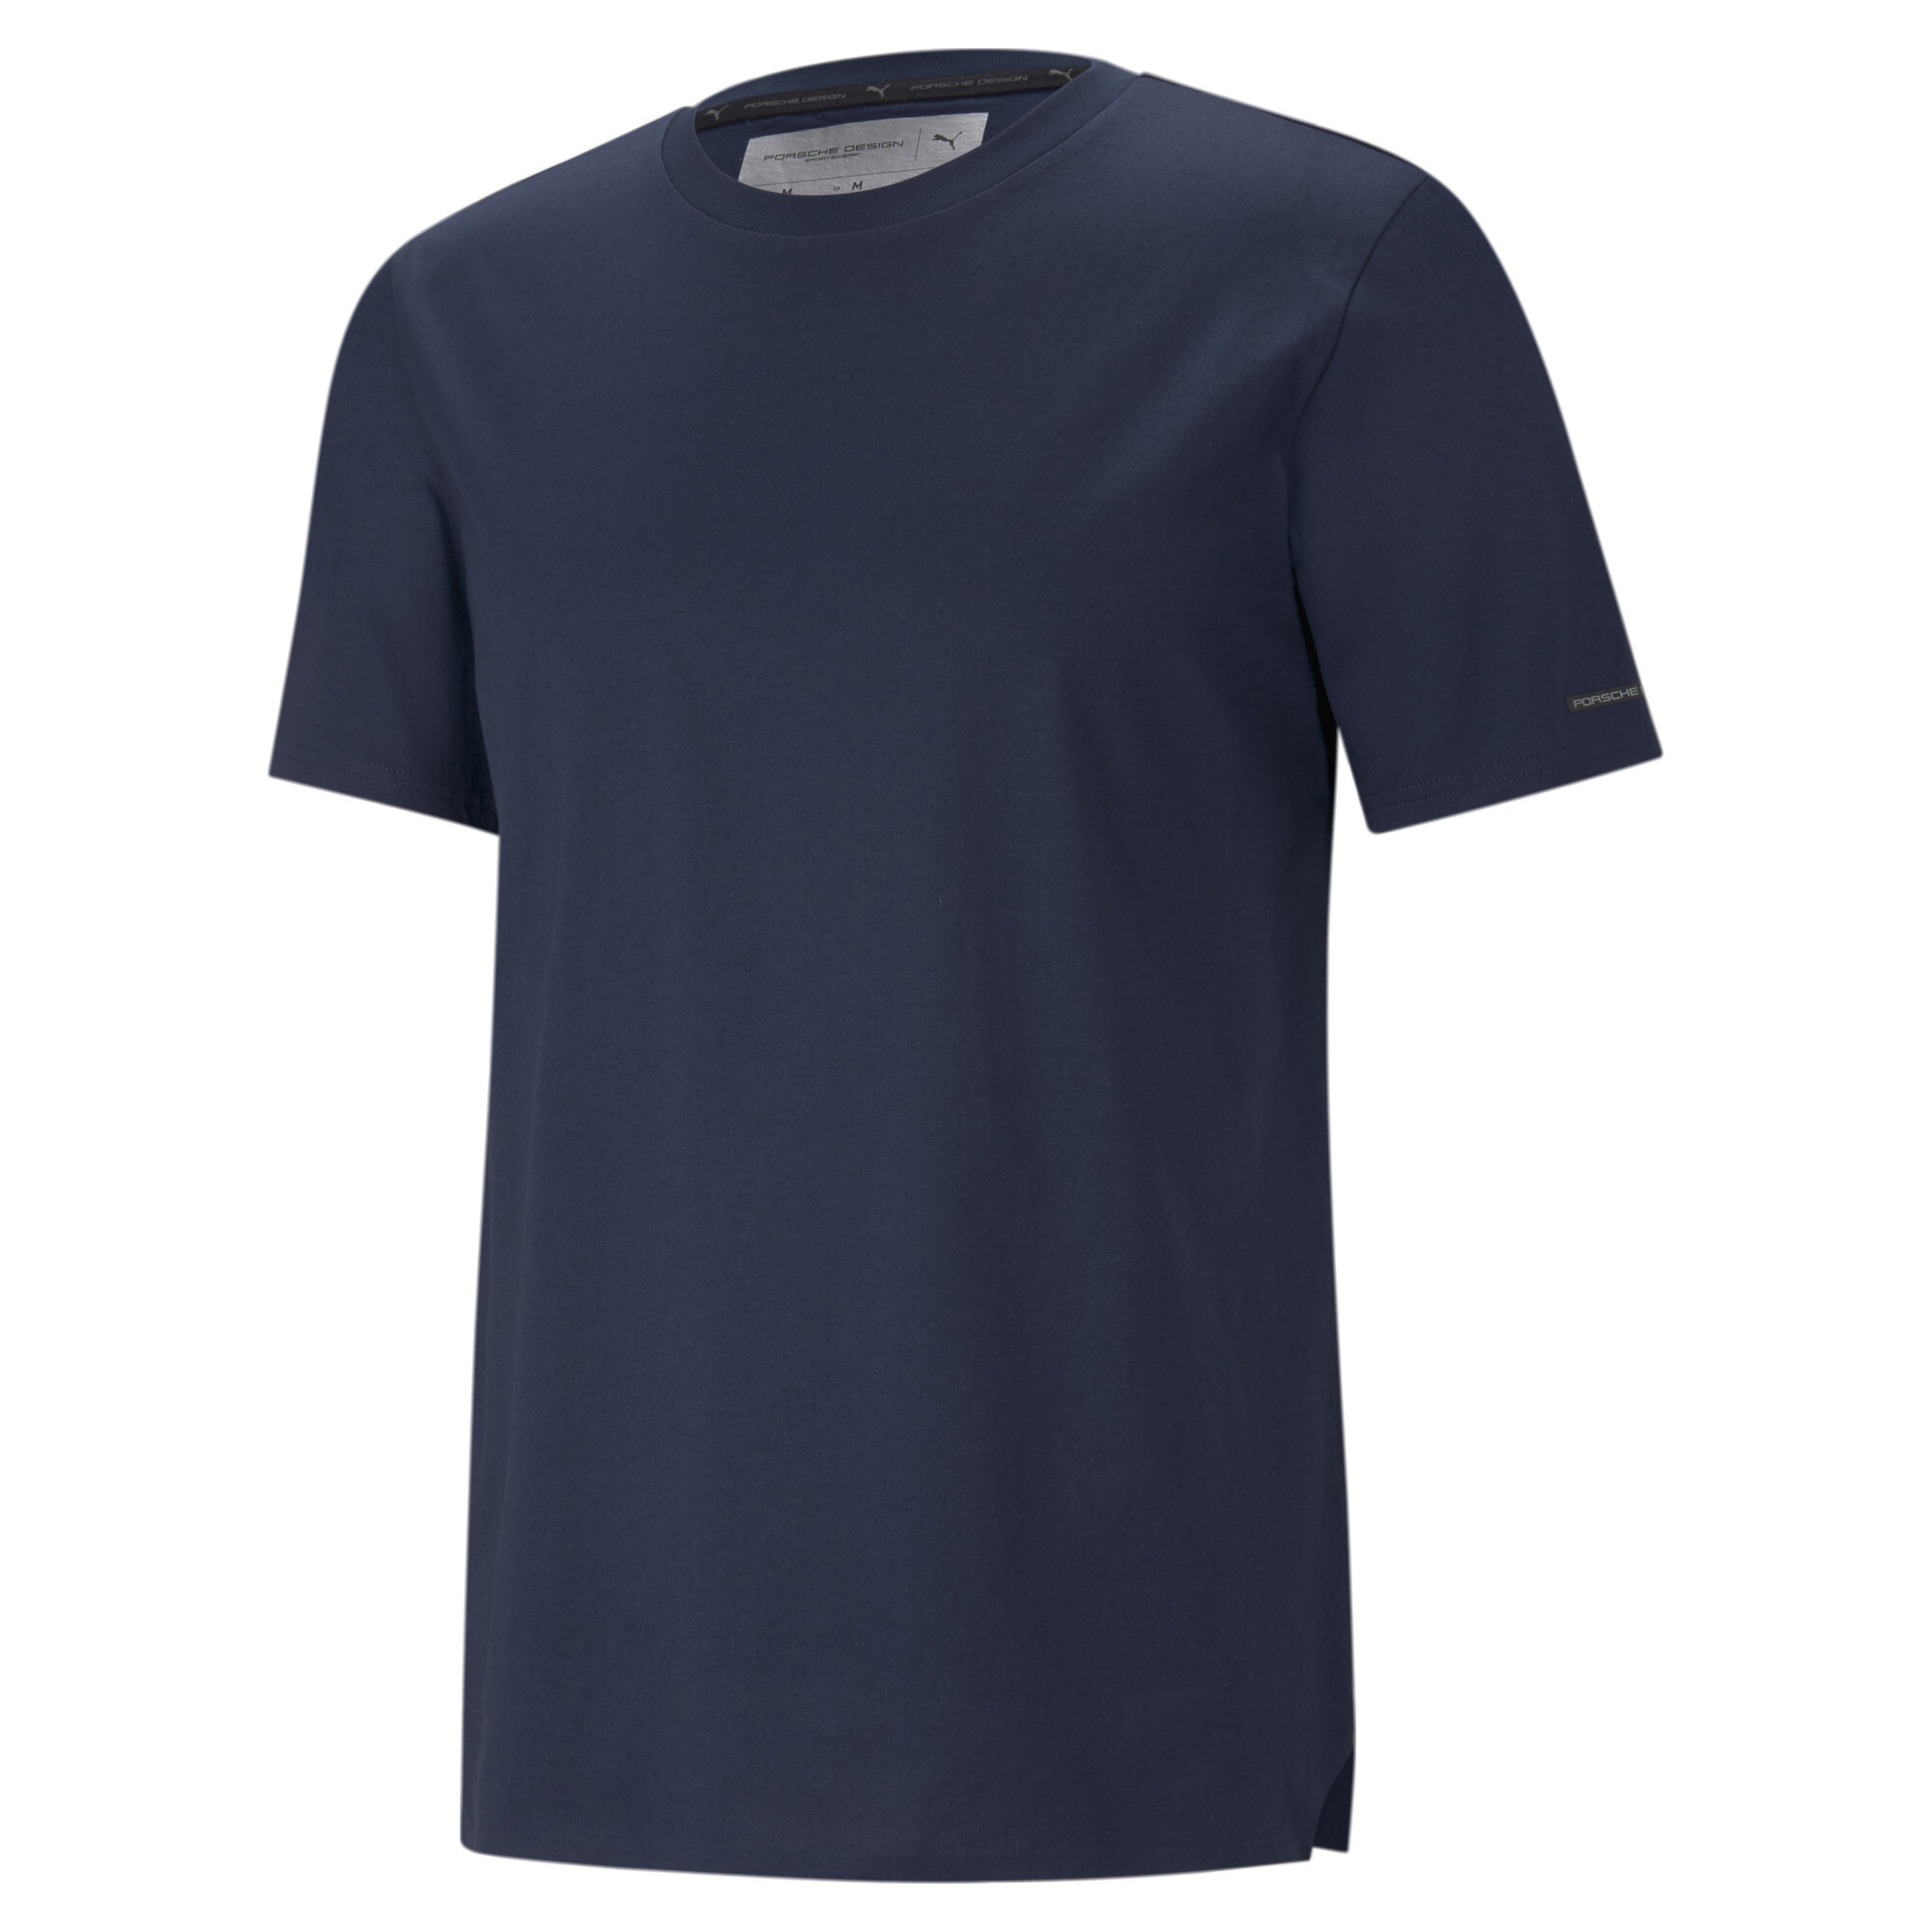 ＜プーマ公式通販＞ プーマ メンズ ポルシェ デザイン エッセンシャル 半袖 Tシャツ メンズ Navy Blazer ｜PUMA.com画像